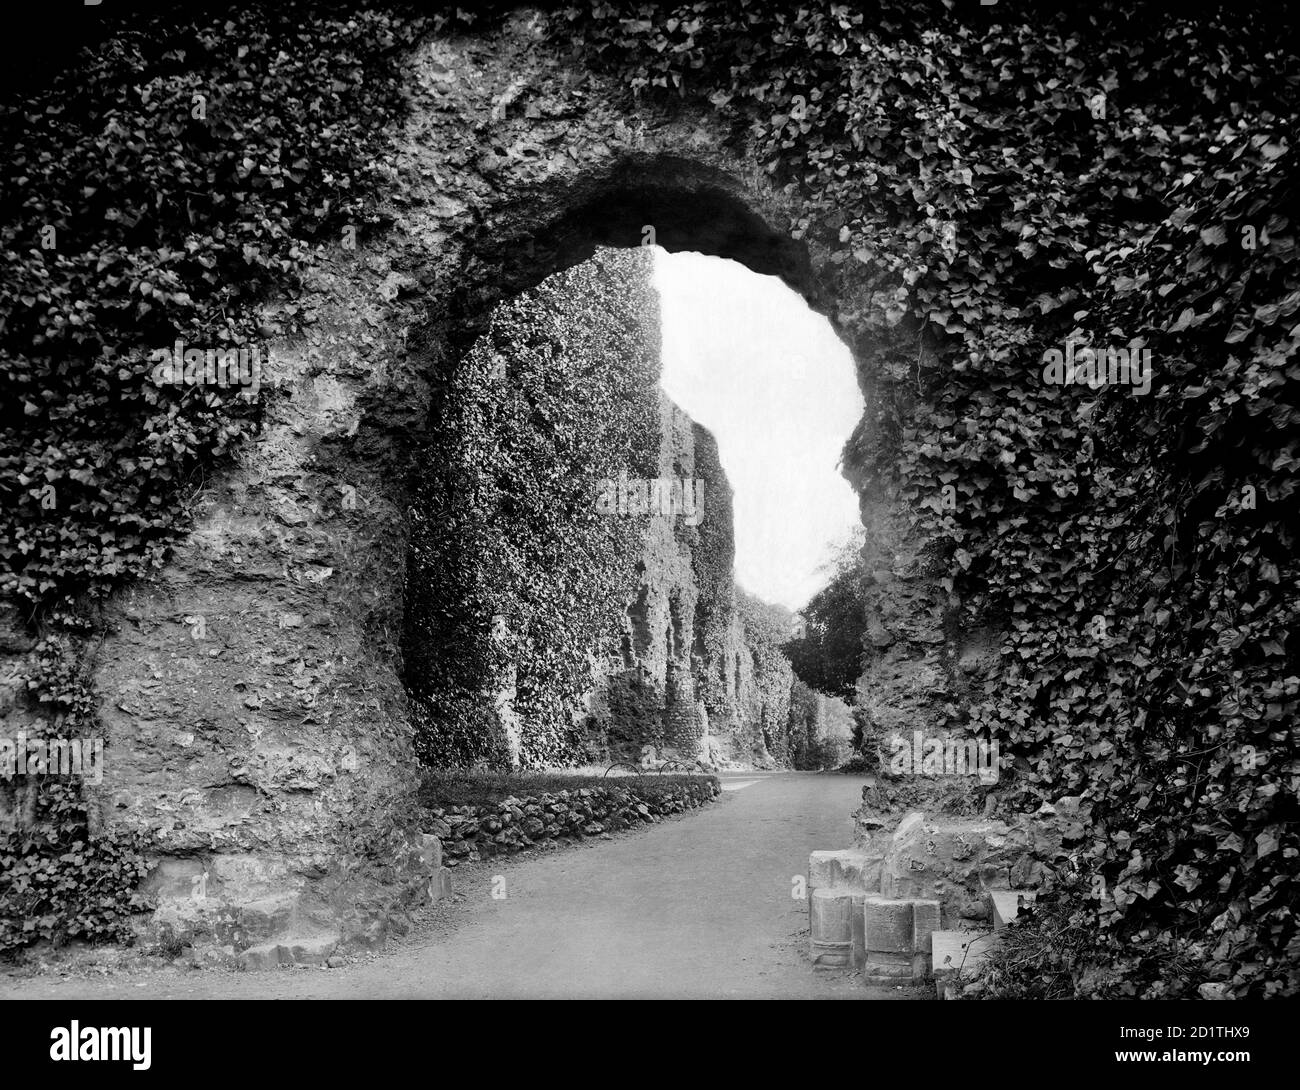 READING ABBEY, Reading Abbey, Berkshire. Les ruines de l'entrée du cloître est en regardant vers le sud. L'abbaye a été fondée par le roi Henry I en 1121. Il devint un palais royal du roi Henri VIII après la dissolution des monastères en 1537. Photographié en 1890 par Henry Taunt. Banque D'Images